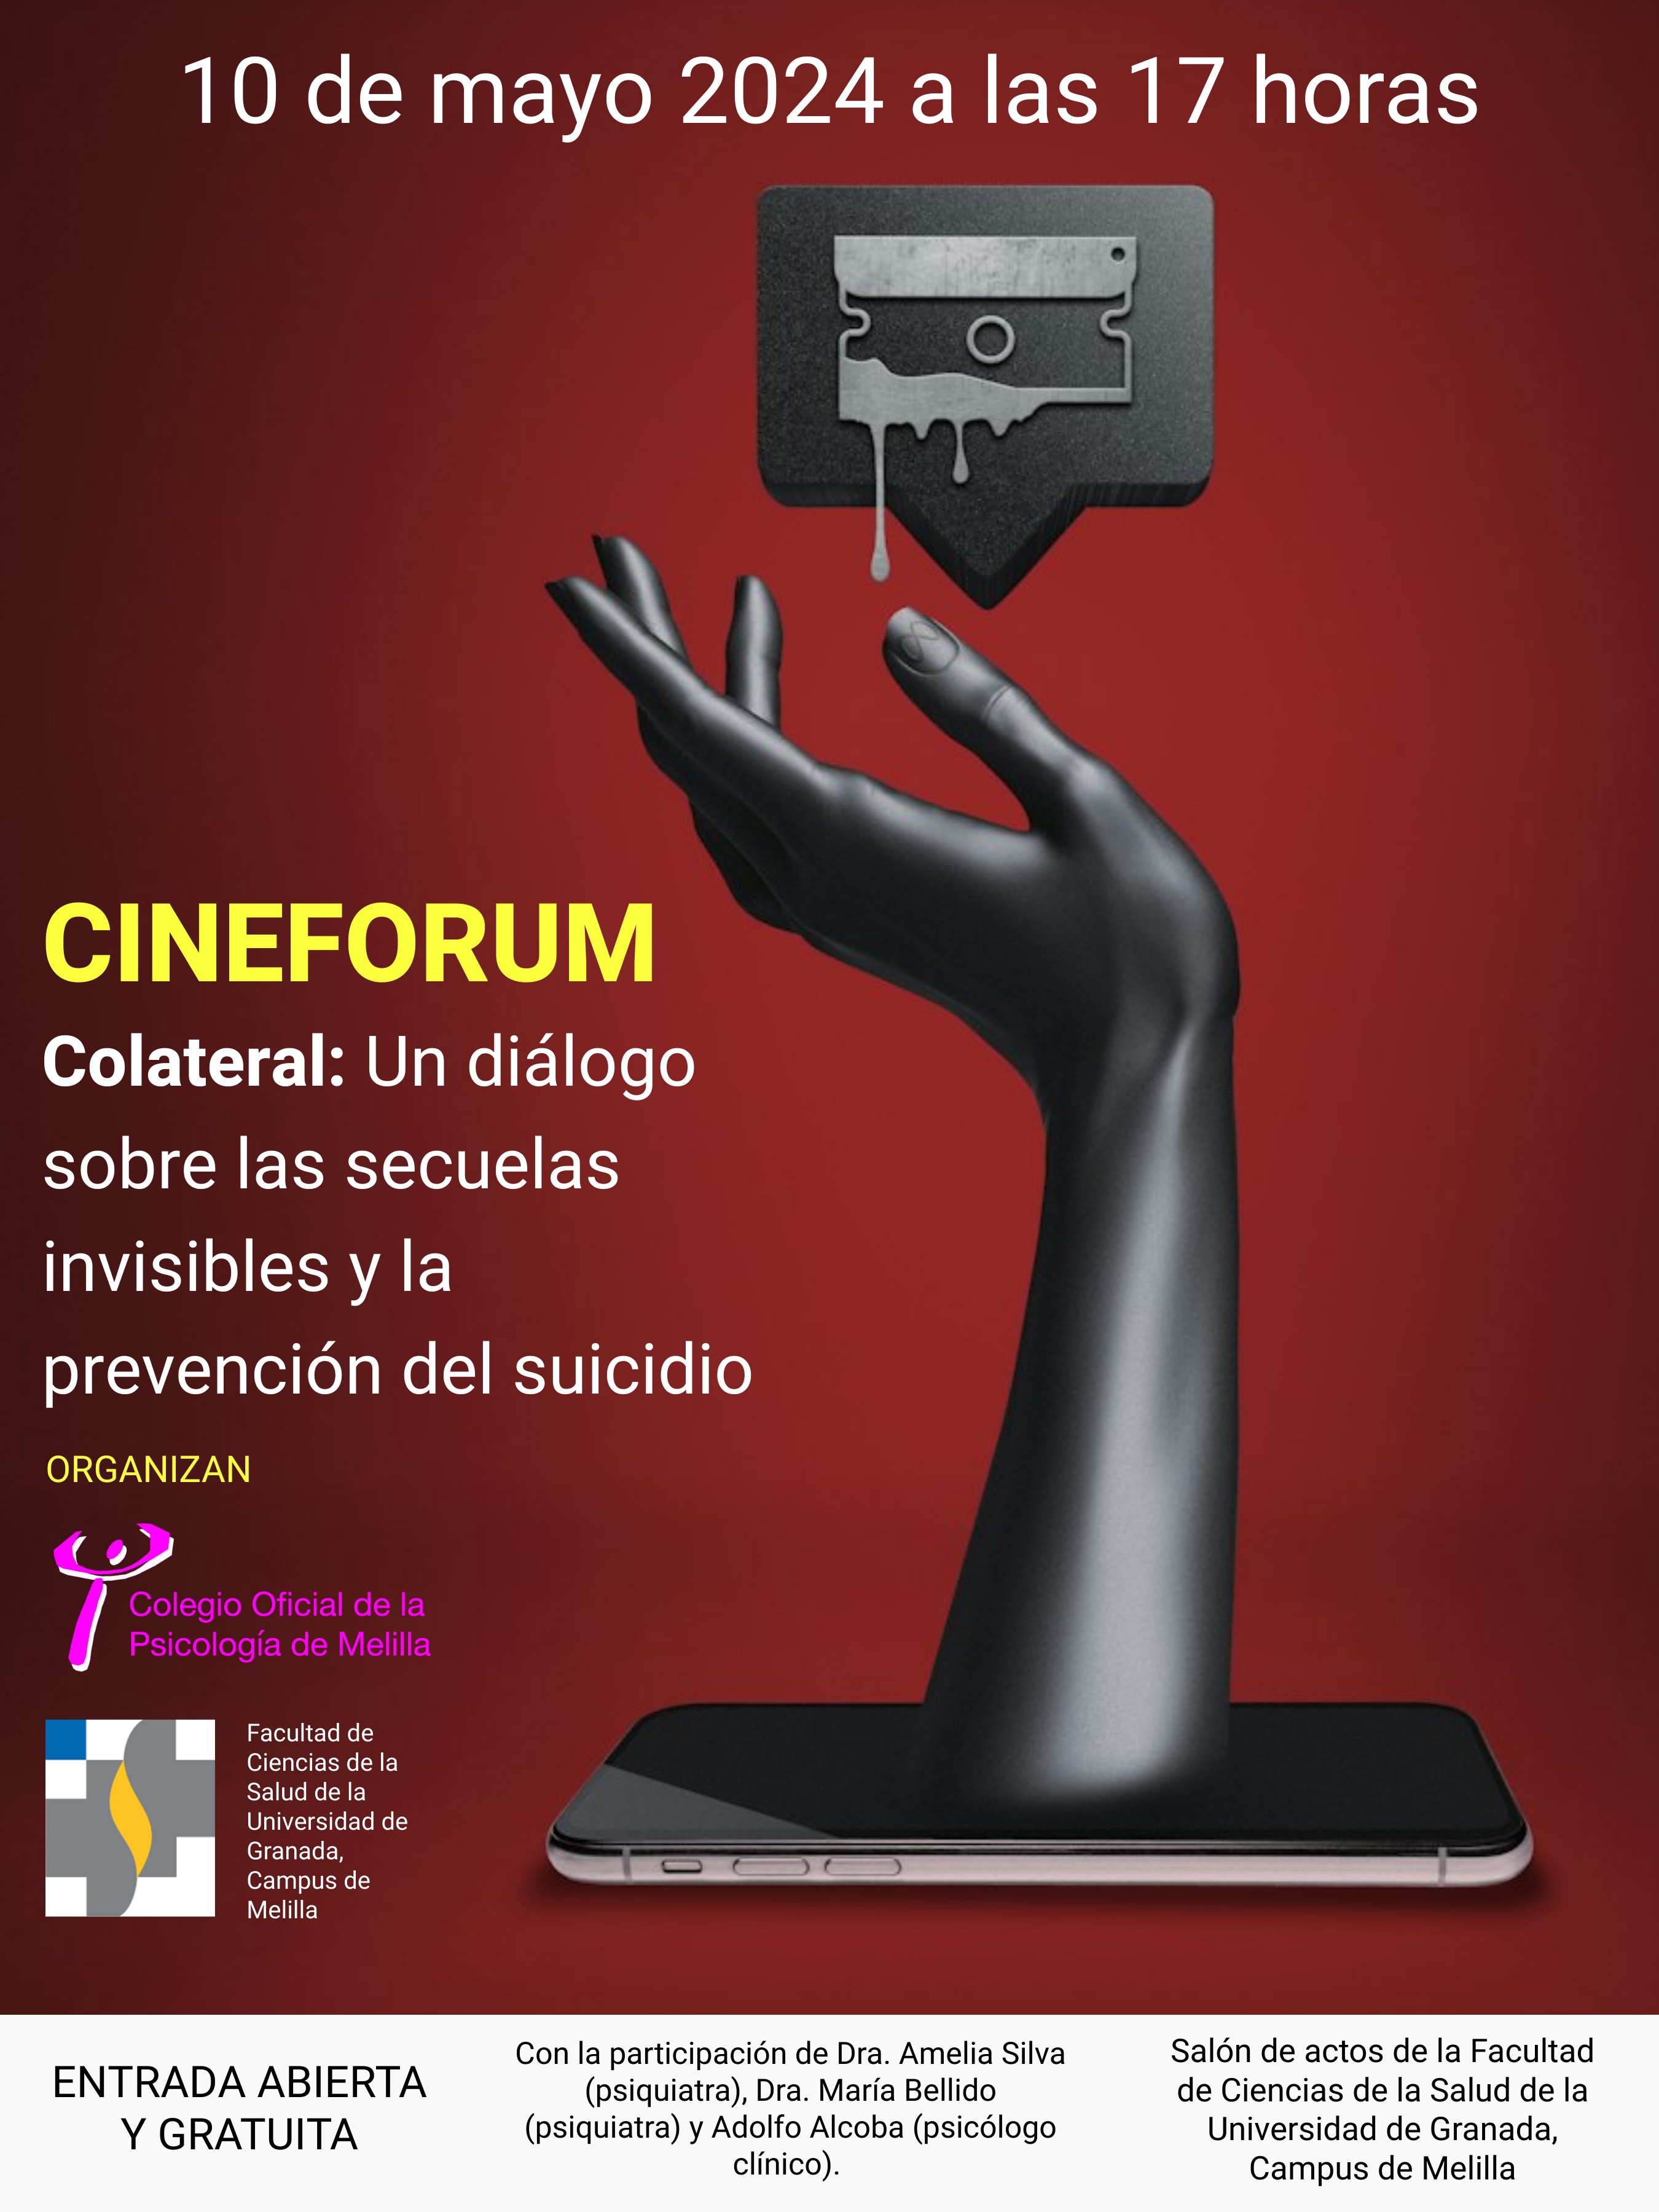 'Colateral: Un diálogo sobre las secuelas invisibles y la prevención del suicidio'